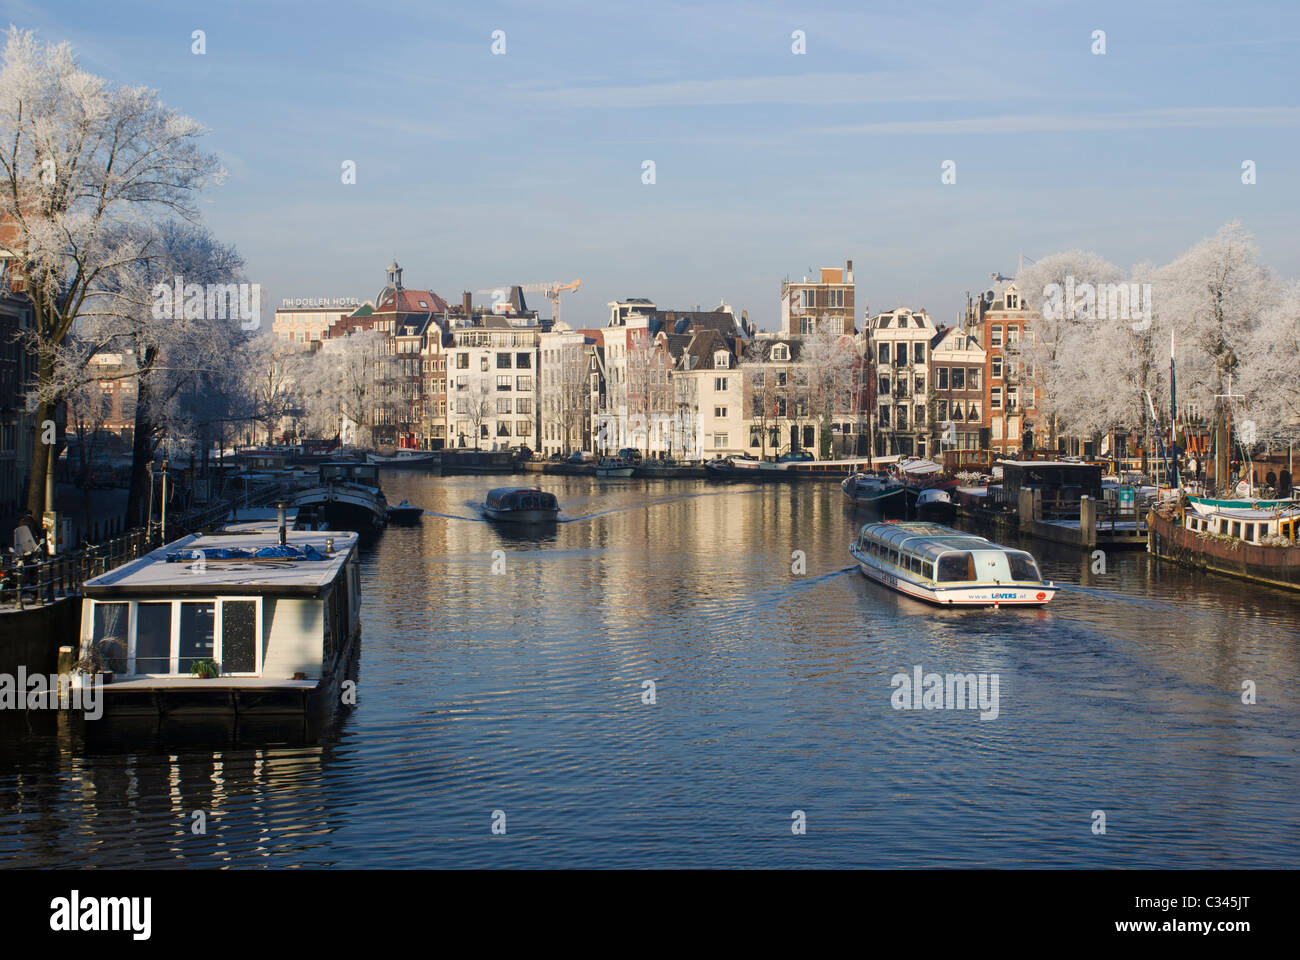 Des bateaux touristiques sur la rivière Amstel, dans une rue calme matin d'hiver à Amsterdam, aux Pays-Bas. Banque D'Images